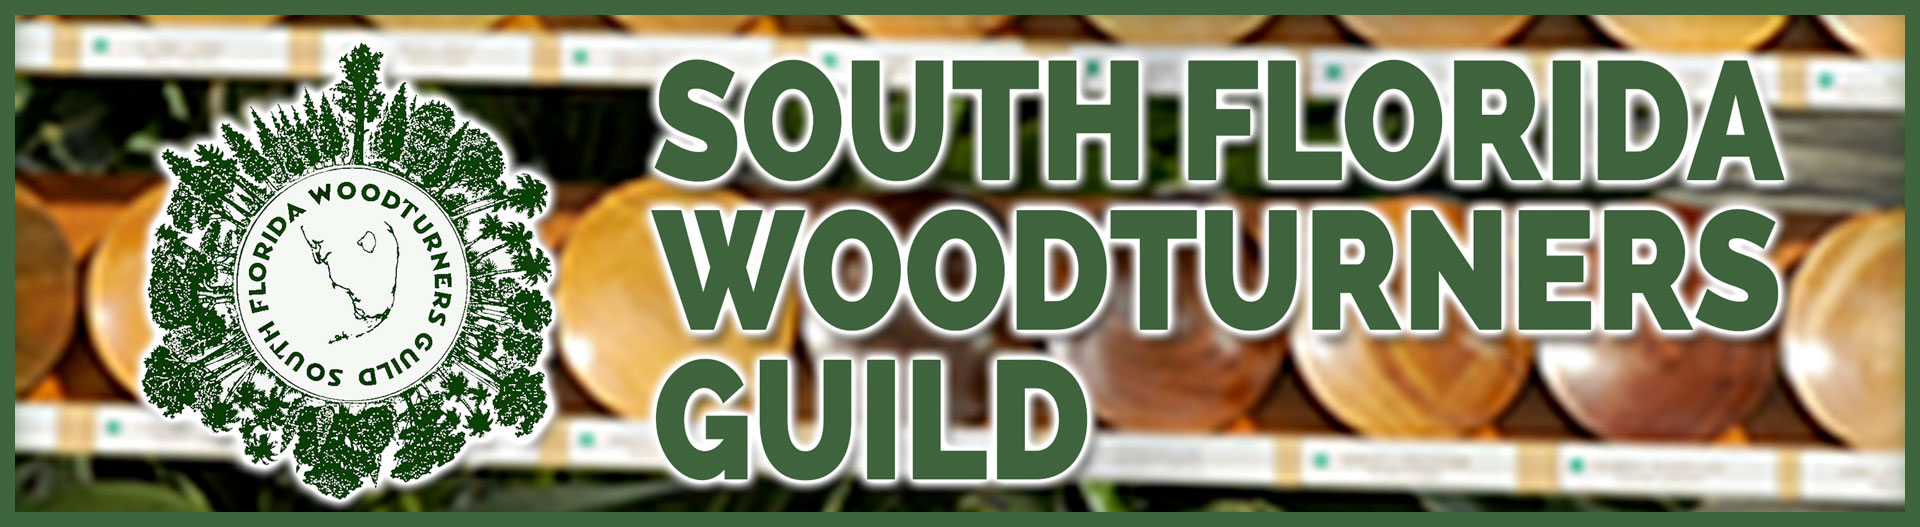 South Florida Woodturners Guild Affiliate - Slider Image